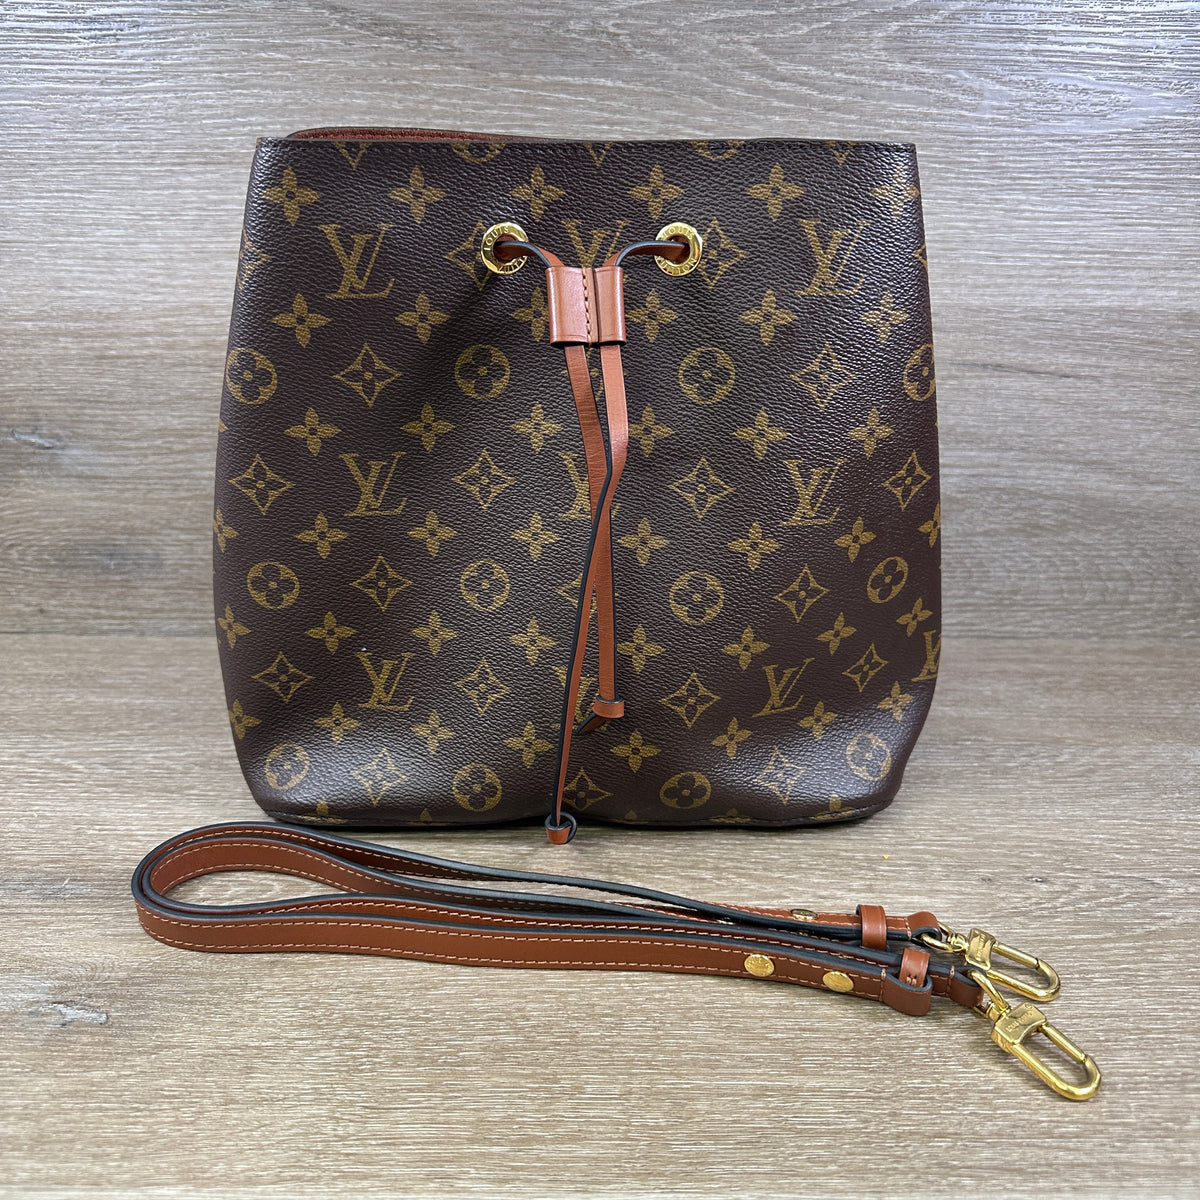 Louis Vuitton, Bags, Louis Vuitton Neonoe Caramel Handbag